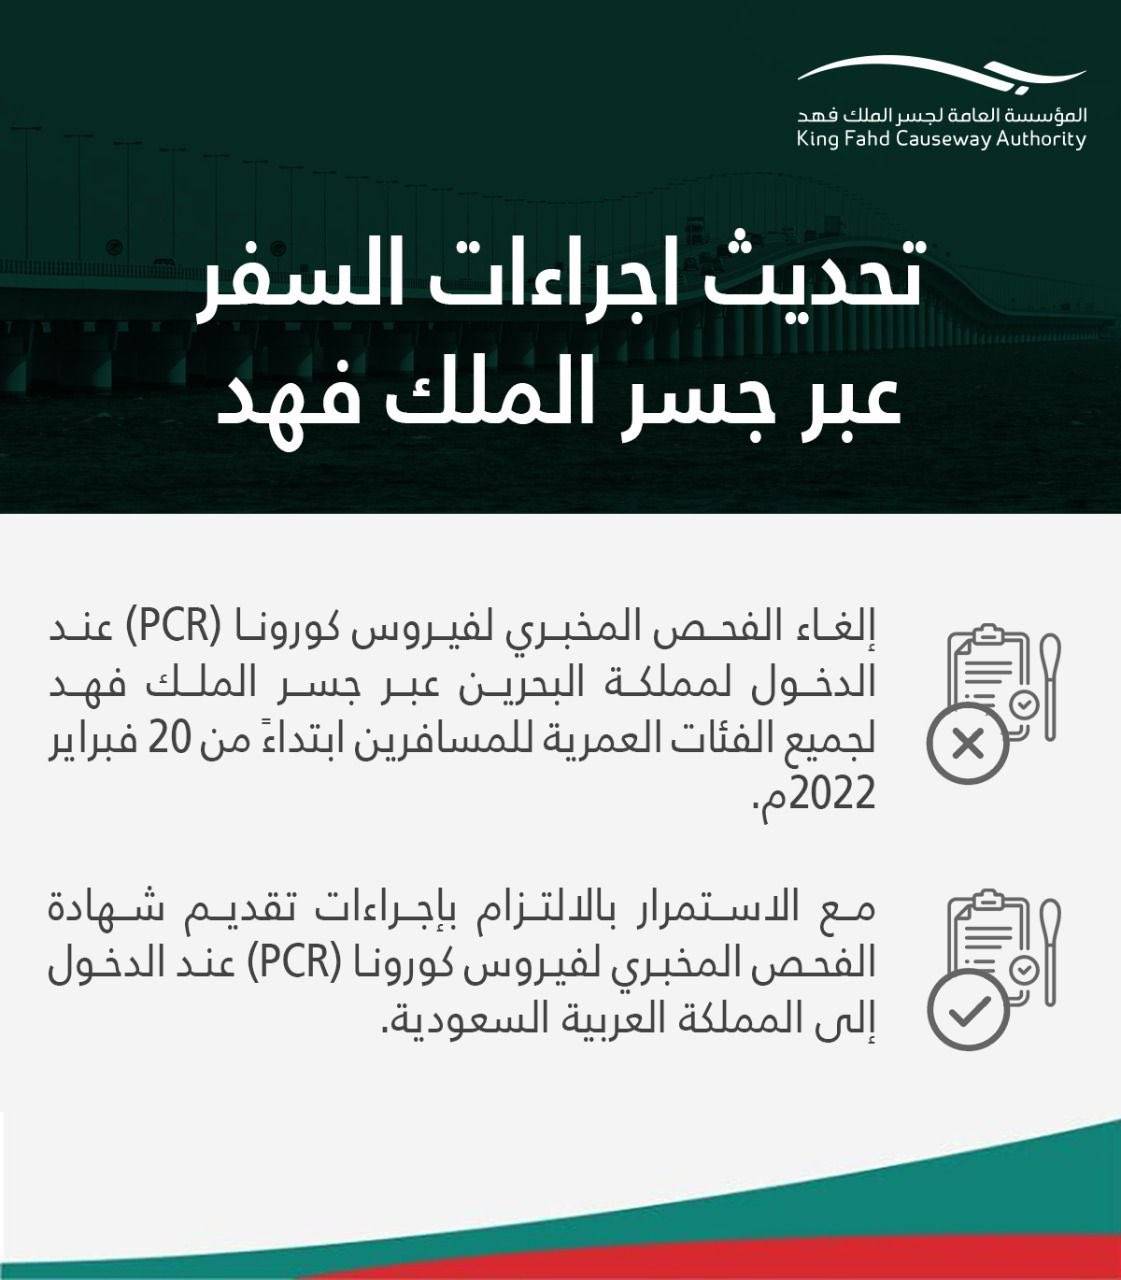 مؤسسة جسر الملك فهد تعلن تحديث الإجراءات الصحية المتبعة لدخول البحرين